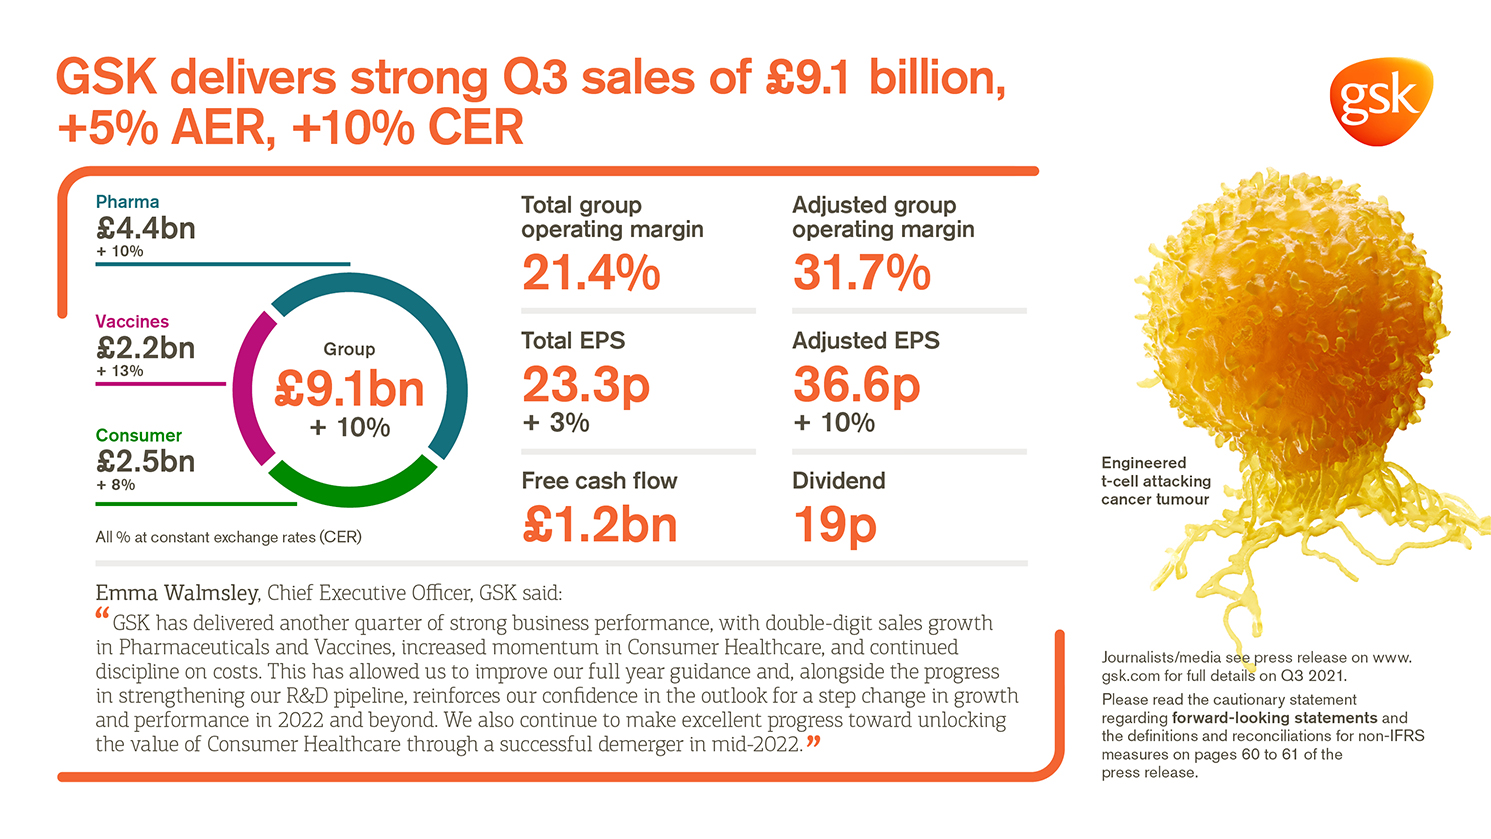 GSK delivers strong Q3 sales of £9.1 billion +5 AER, +10 CER Total